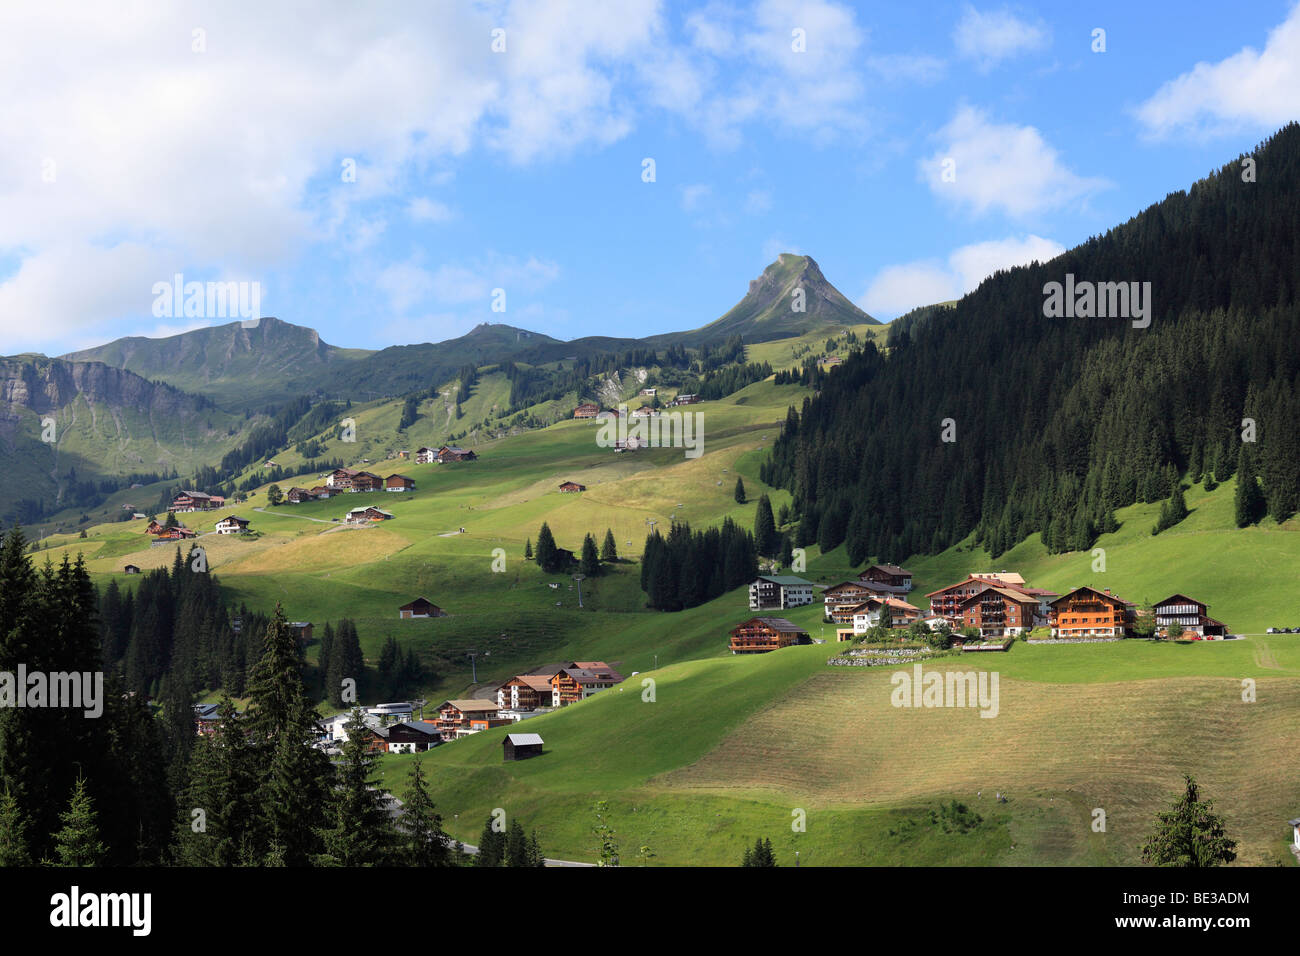 Damuels, Damuelser Mittagsspitze mountain, Bregenzerwald, Bregenz Forest, Vorarlberg, Austria, Europe Stock Photo